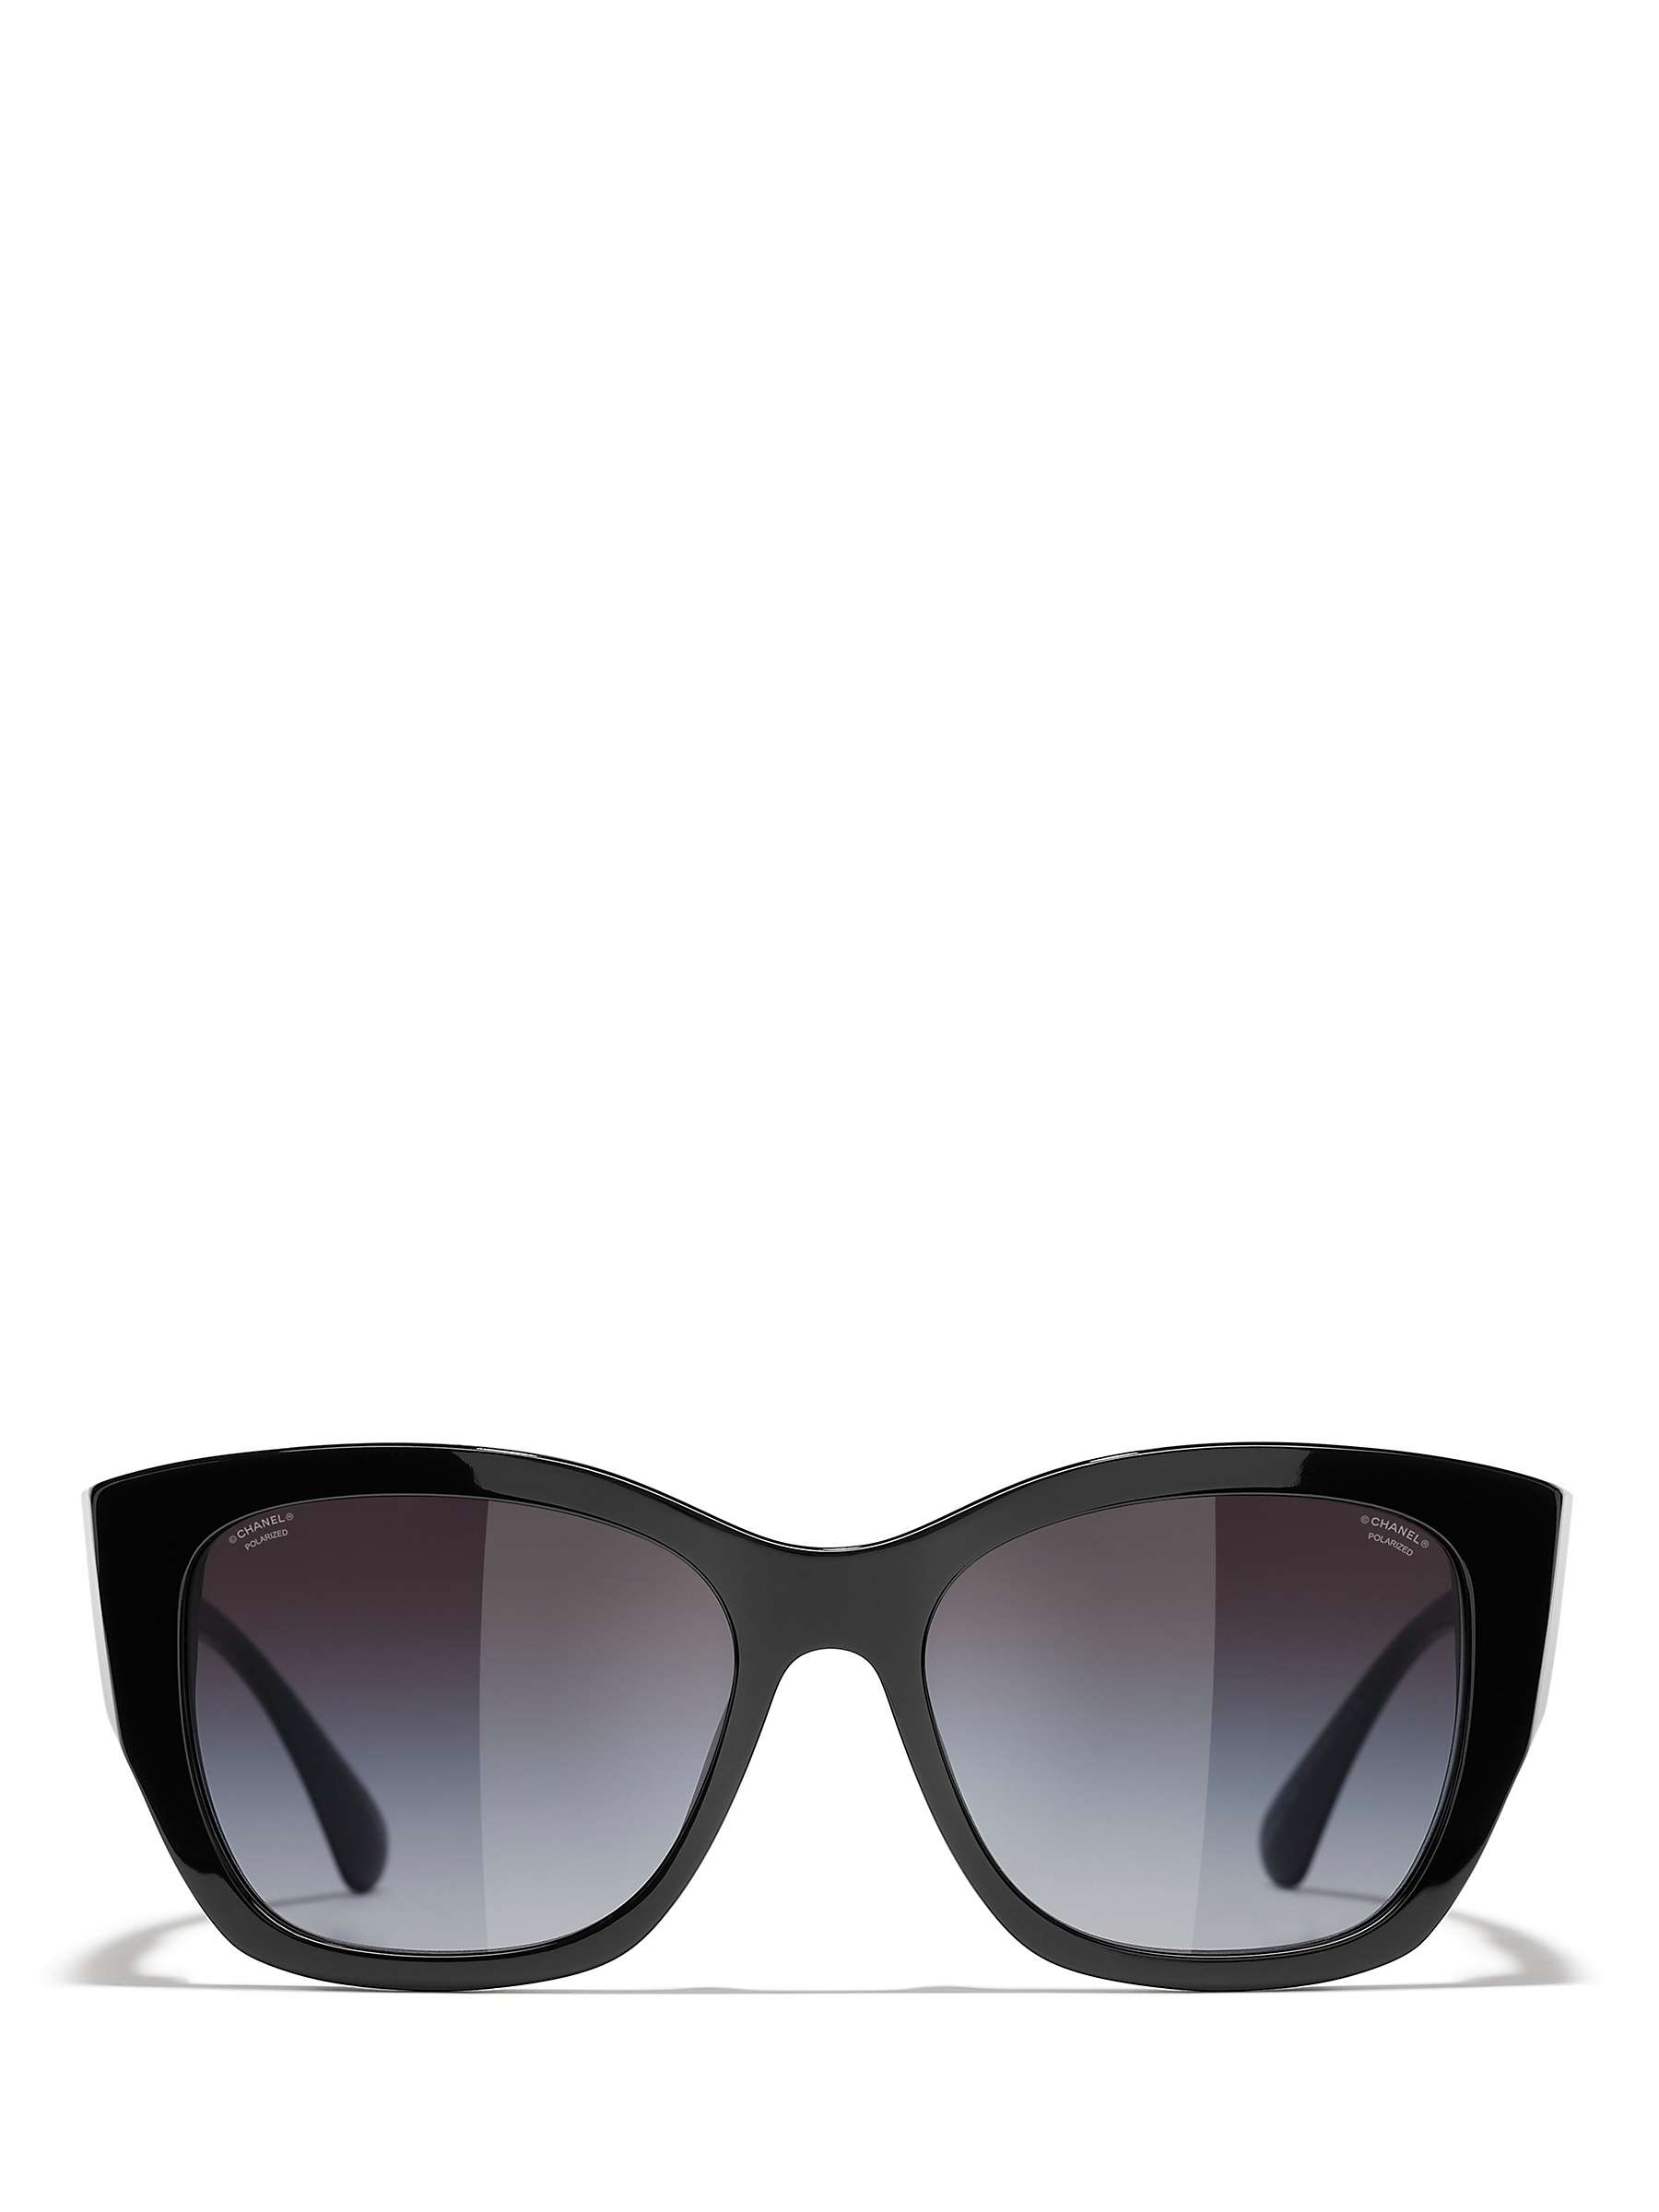 Chanel 5429 Sunglasses (Black/Grey - Butterfly - Women)